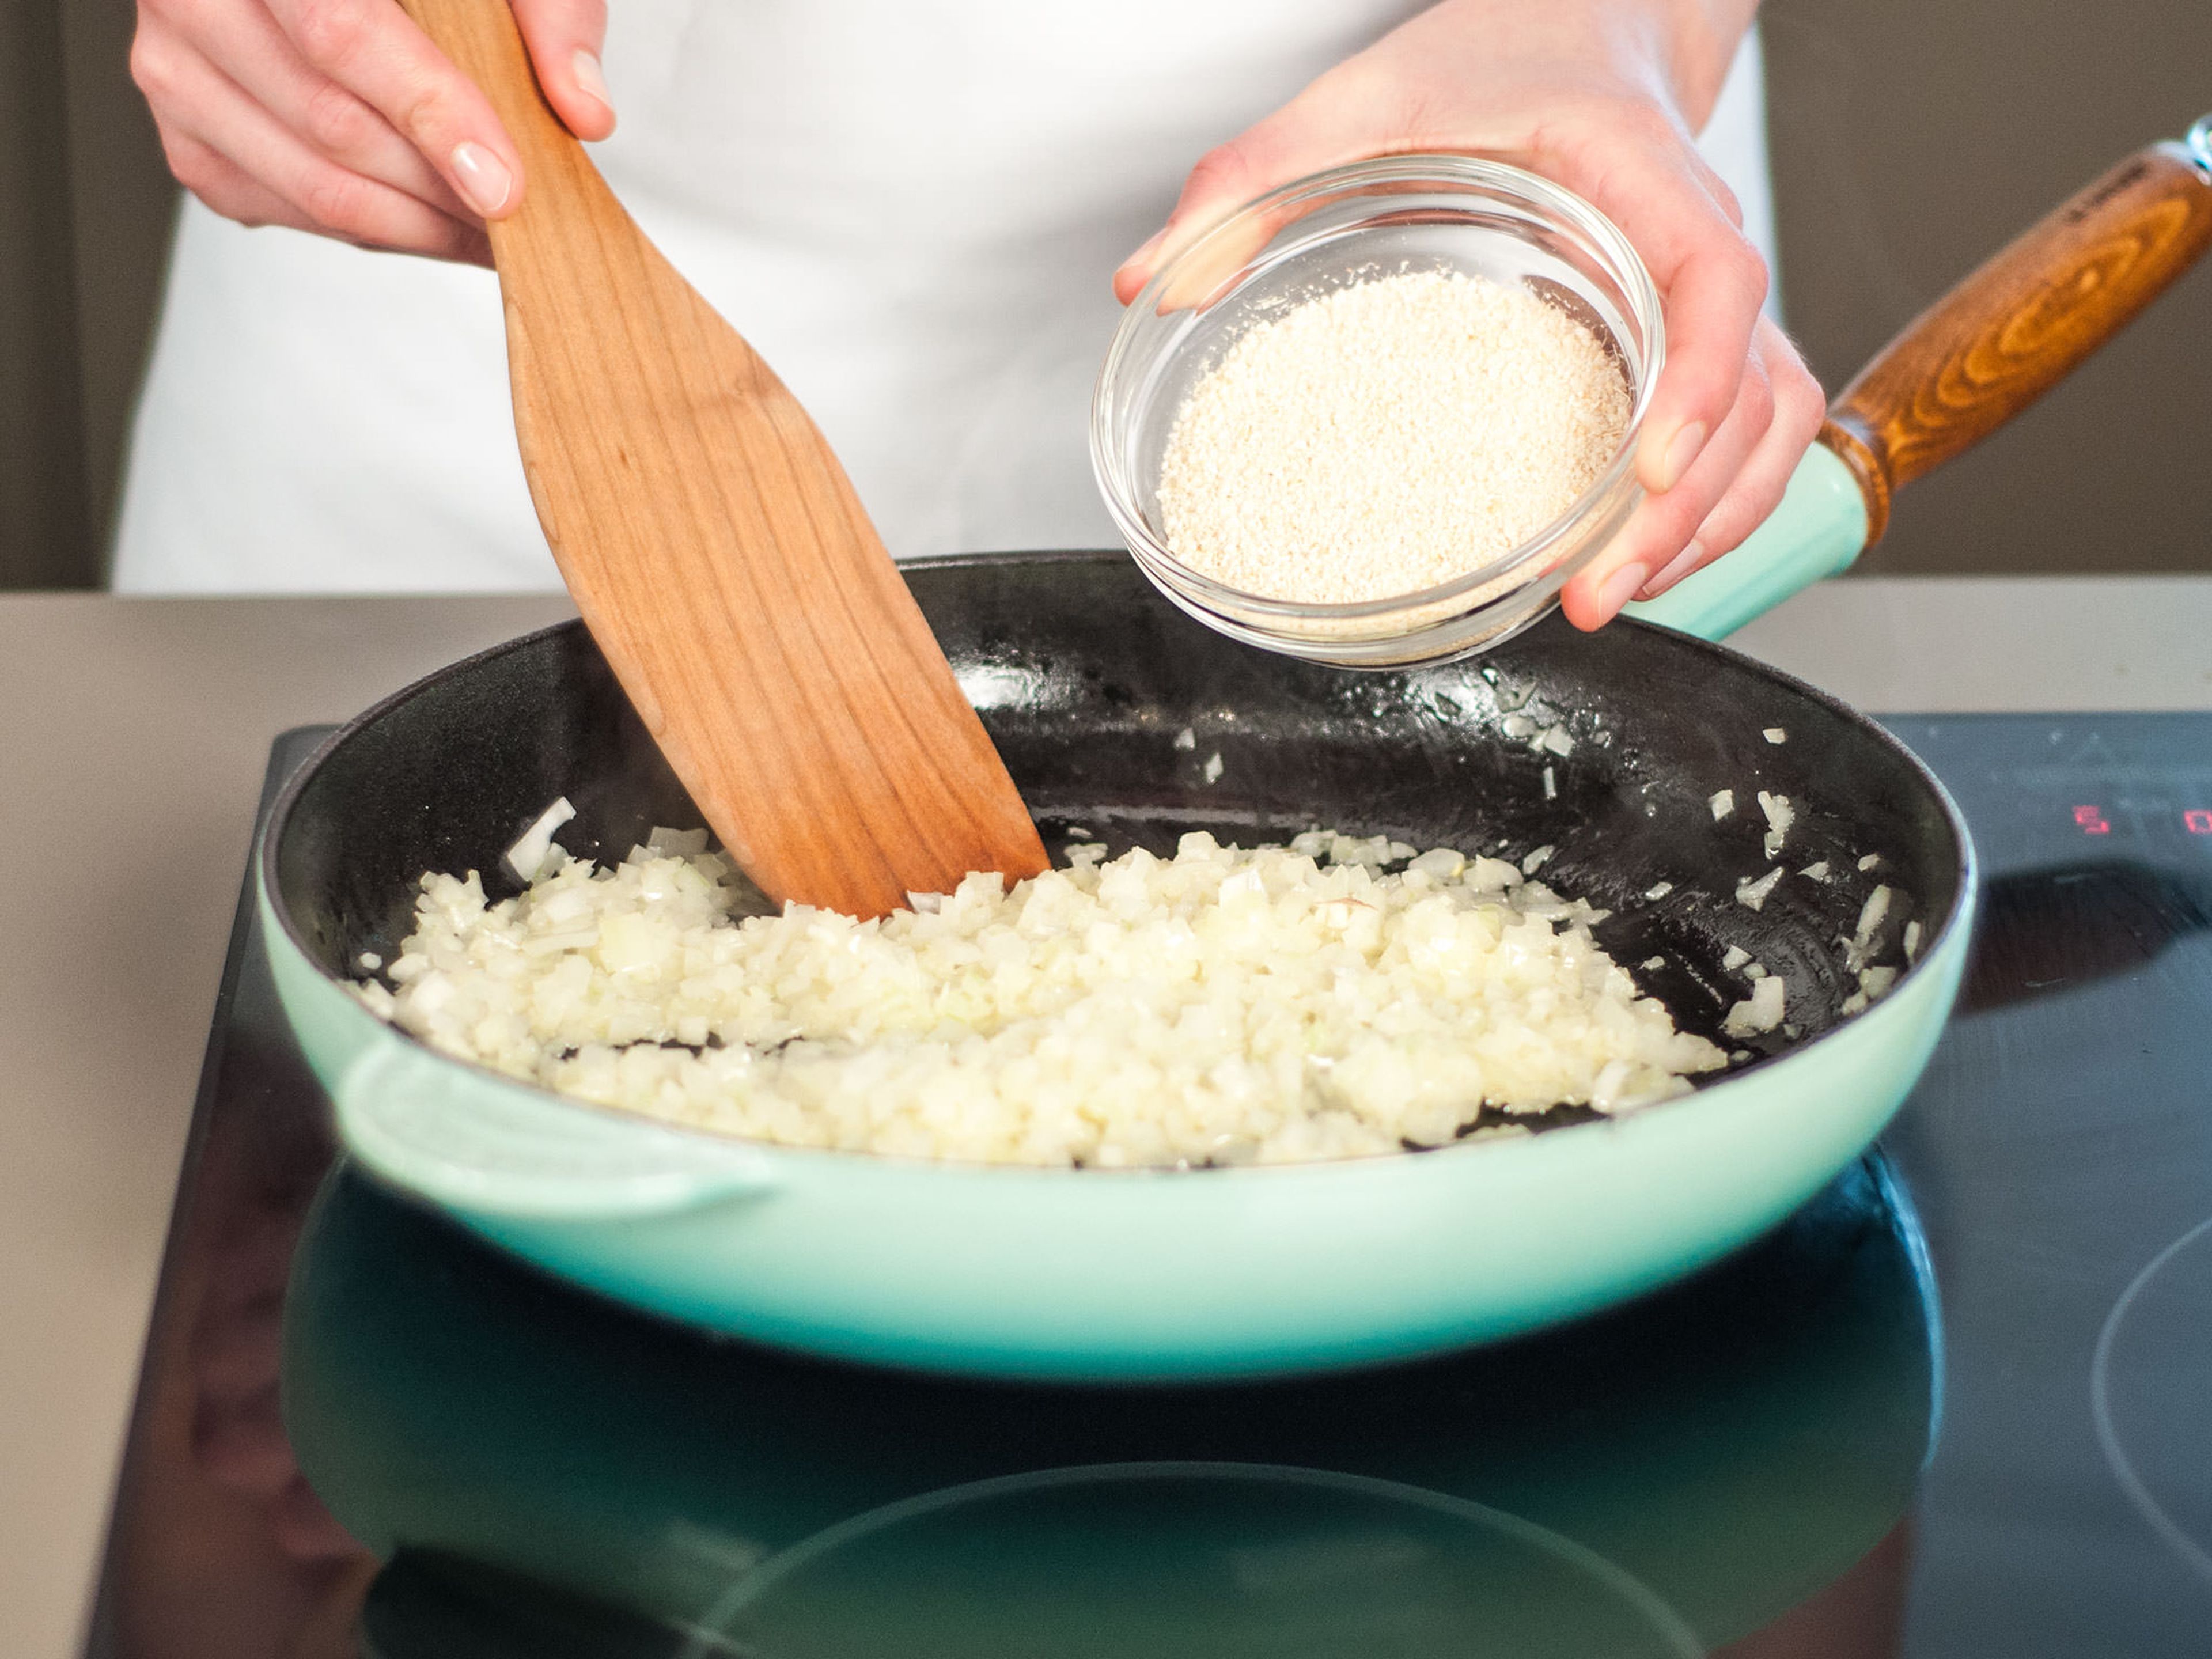 Ein Drittel der Butter in eine Pfanne geben. Zwiebeln und Knoblauch hinzufügen und ca. 3 – 4 Min. bei mittlerer Hitze glasig anbraten. Dann geröstetes Maniokmehl hinzugeben und gut verrühren. Für weitere 1 – 2 Min. kochen lassen.